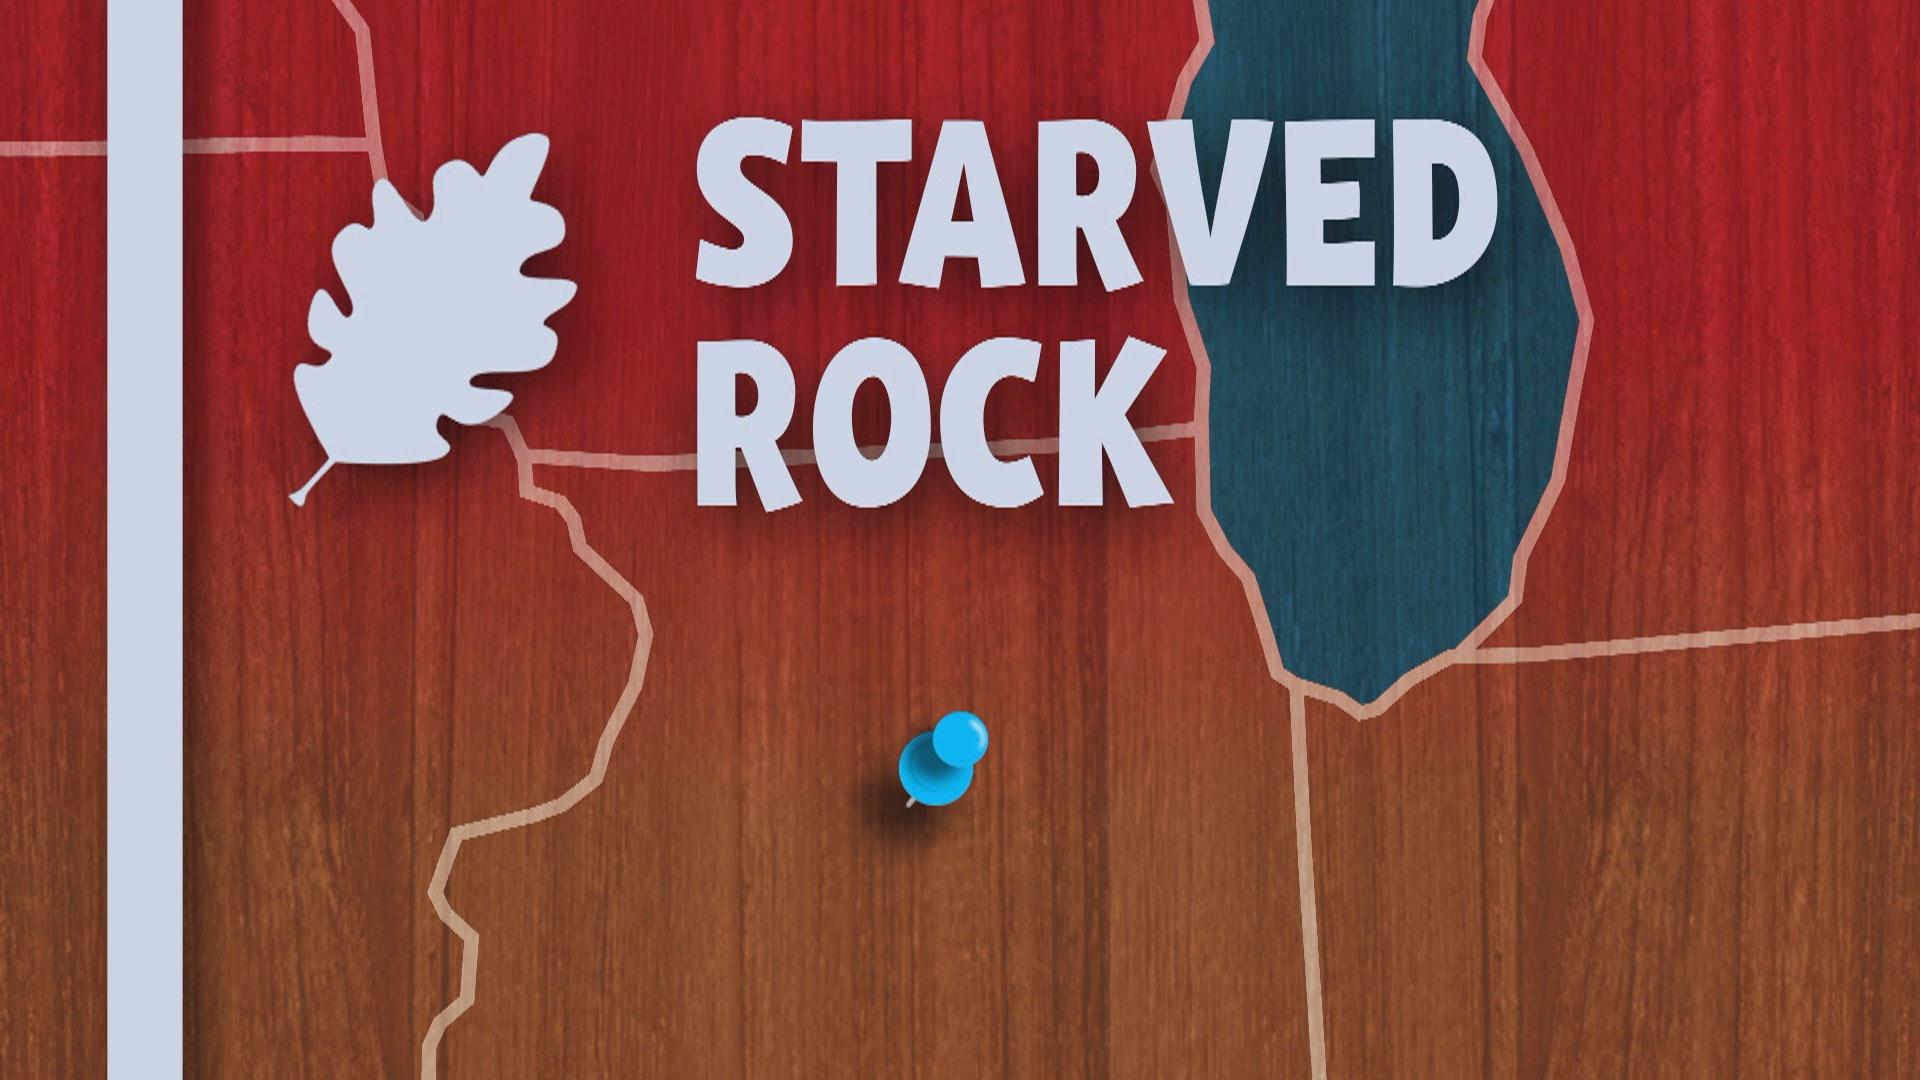 Starved Rock, Illinois